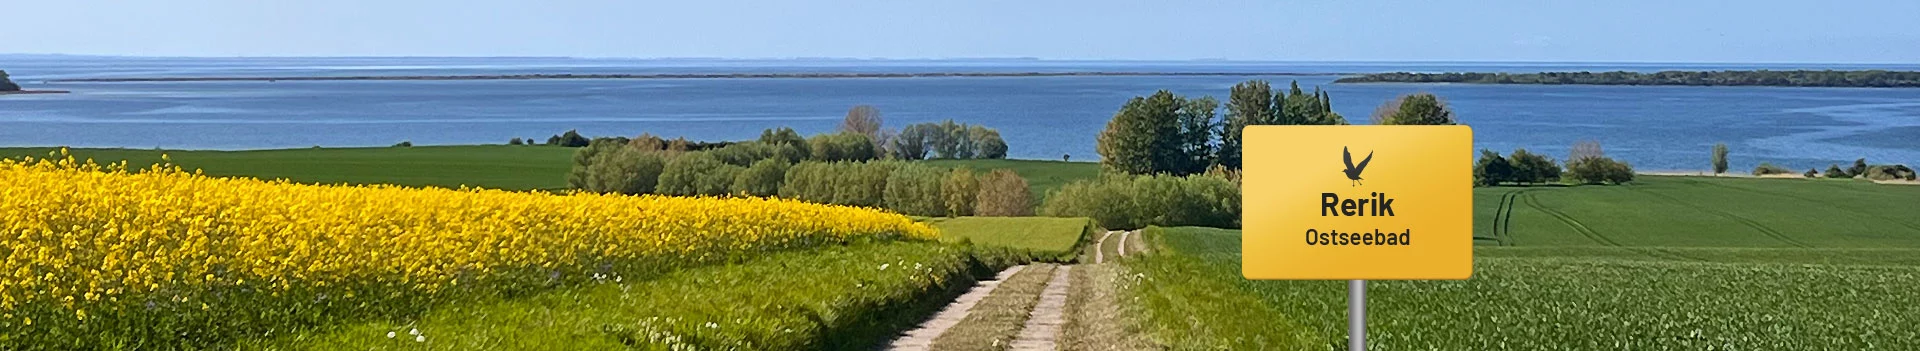 Ostseebad Rerik – Blick auf Salzhaff und Ostsee, im Hintergrund die Halbinsel Wustrow